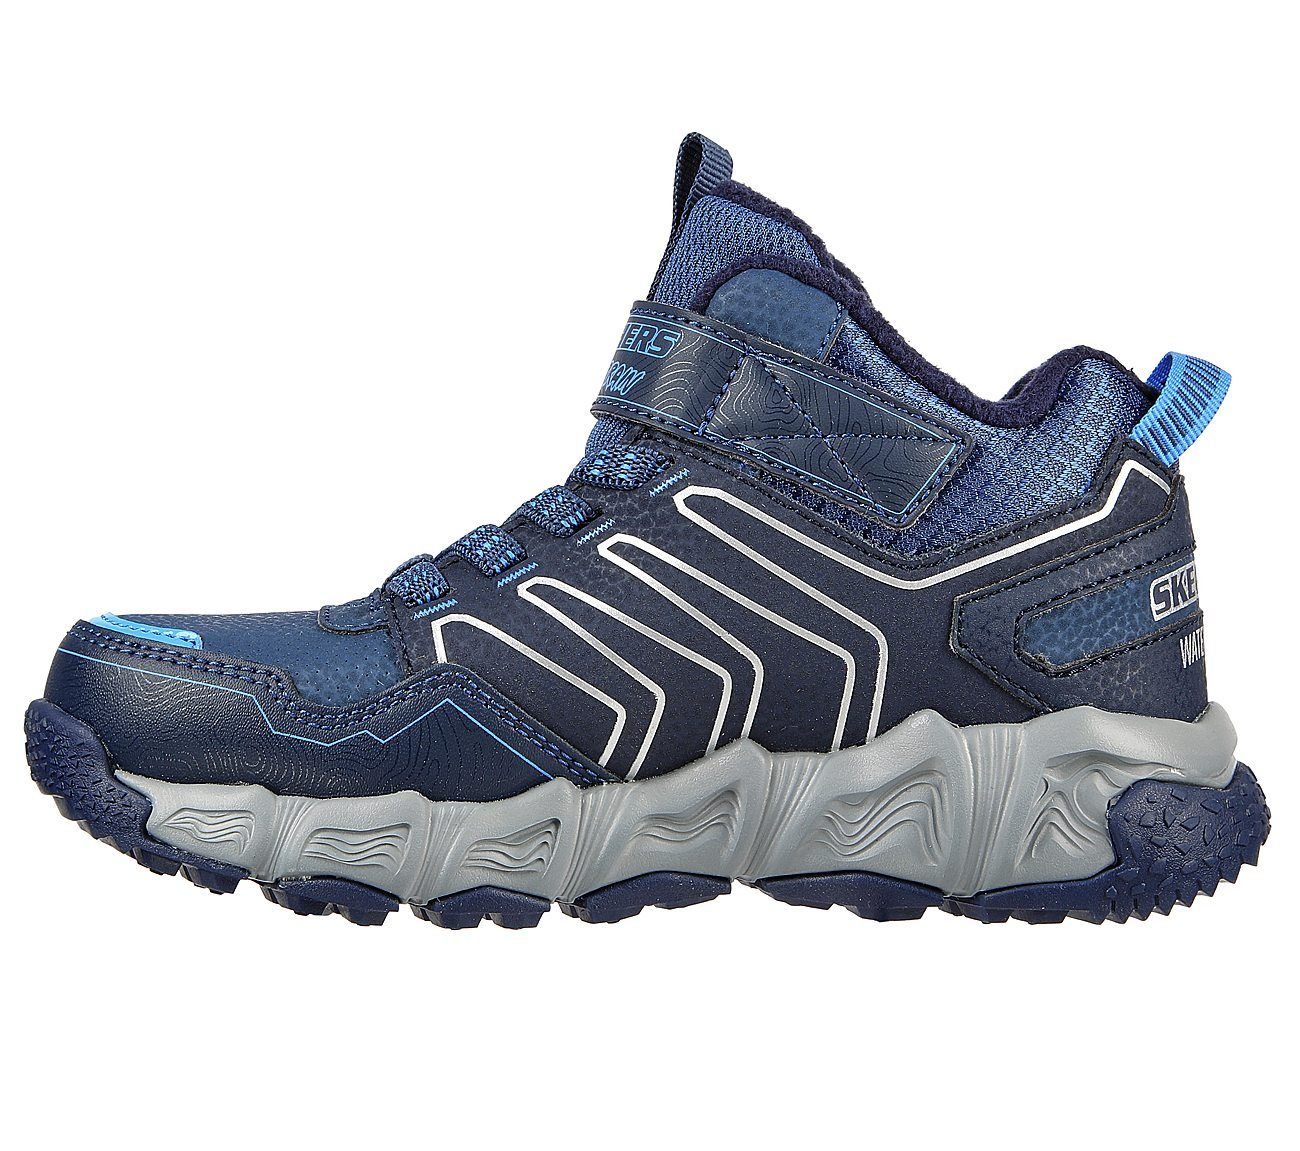 Skechers Combex Sneaker navy/blue